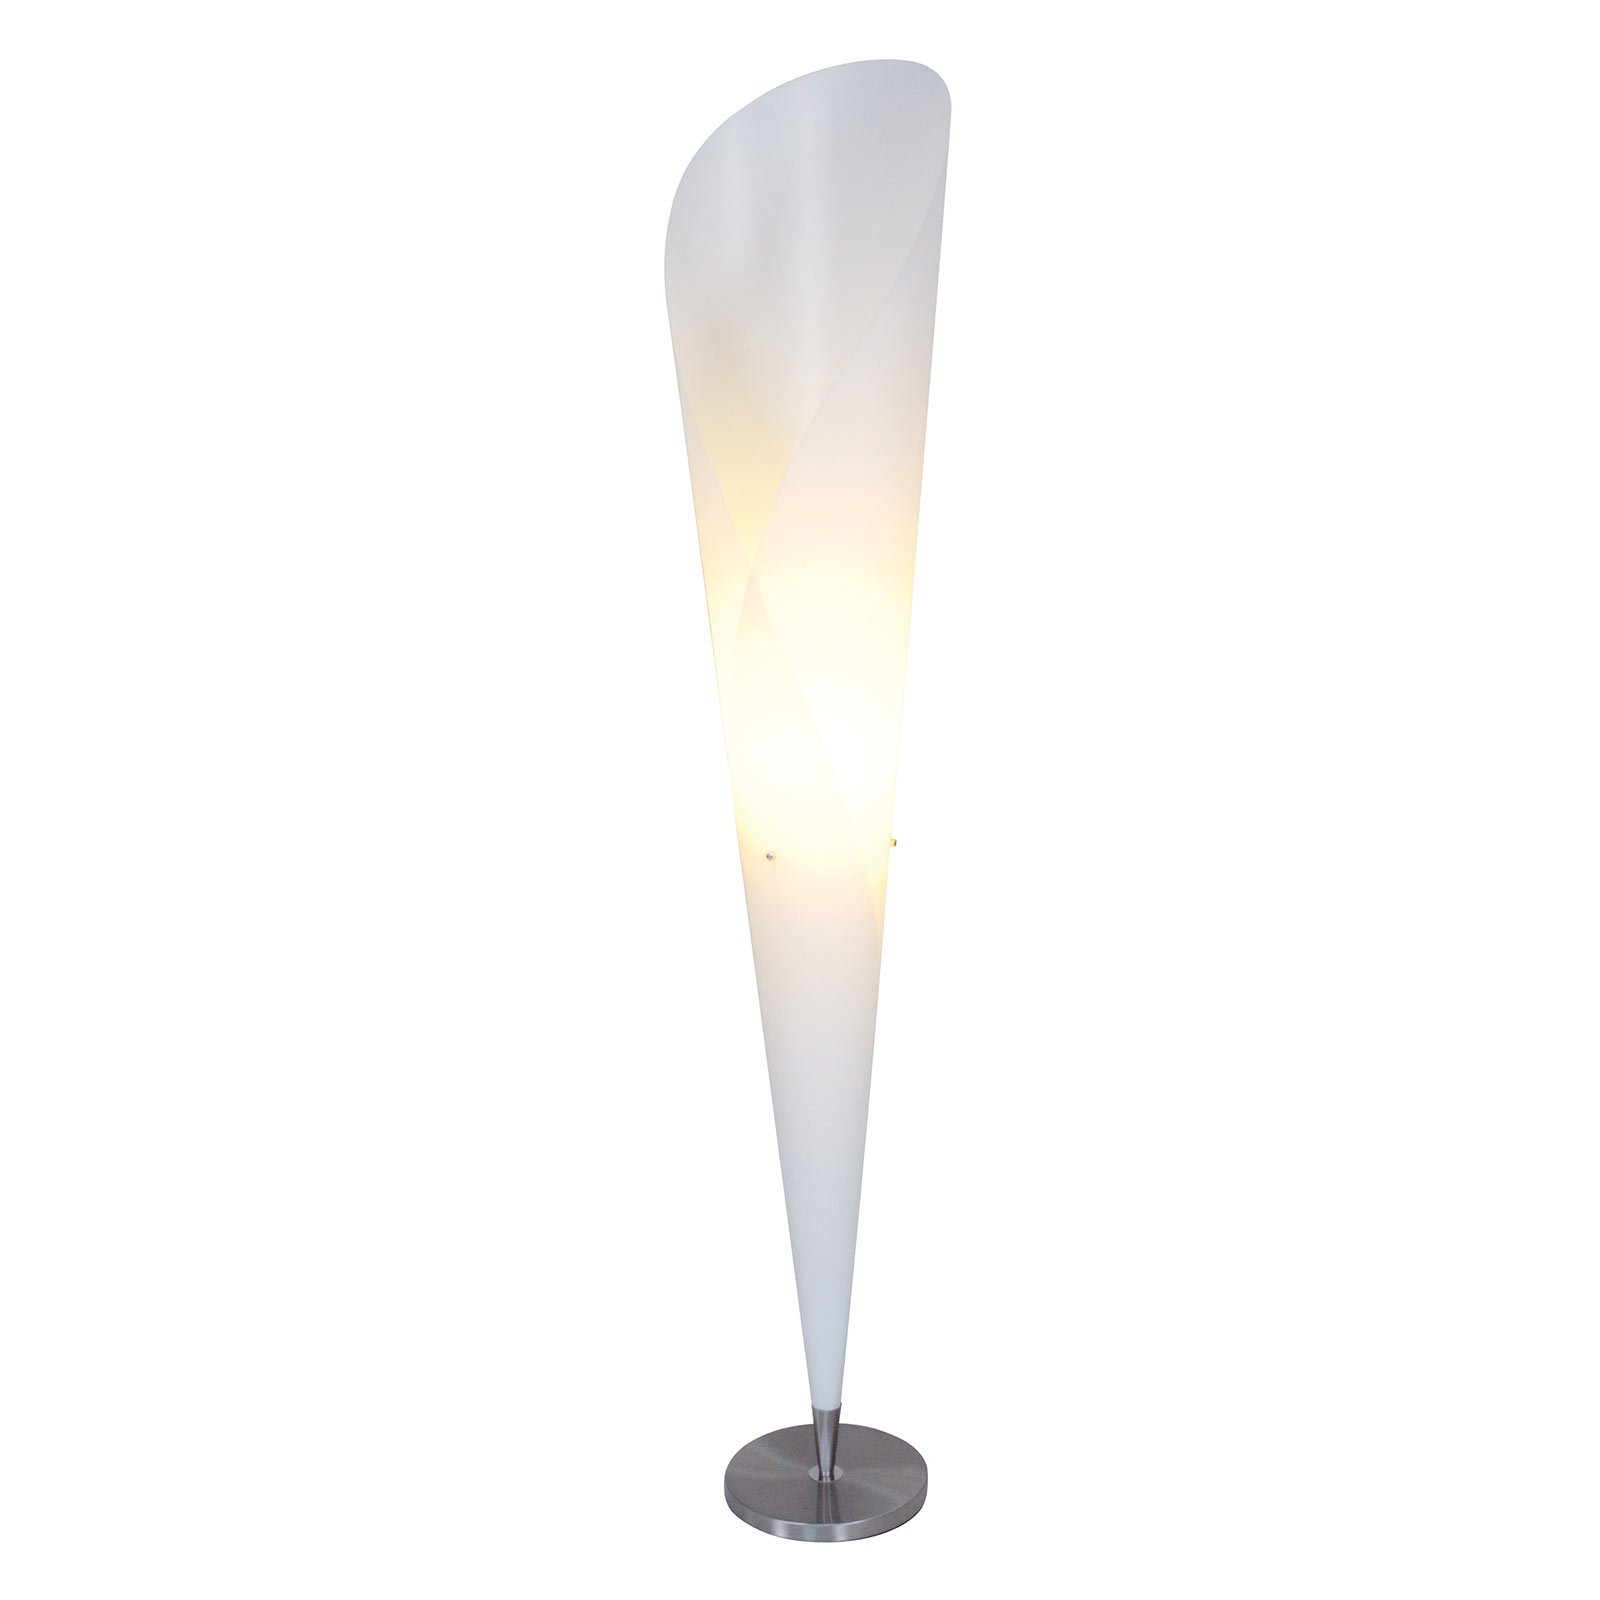 Fraai vormgegeven vloerlamp Tulip, wit